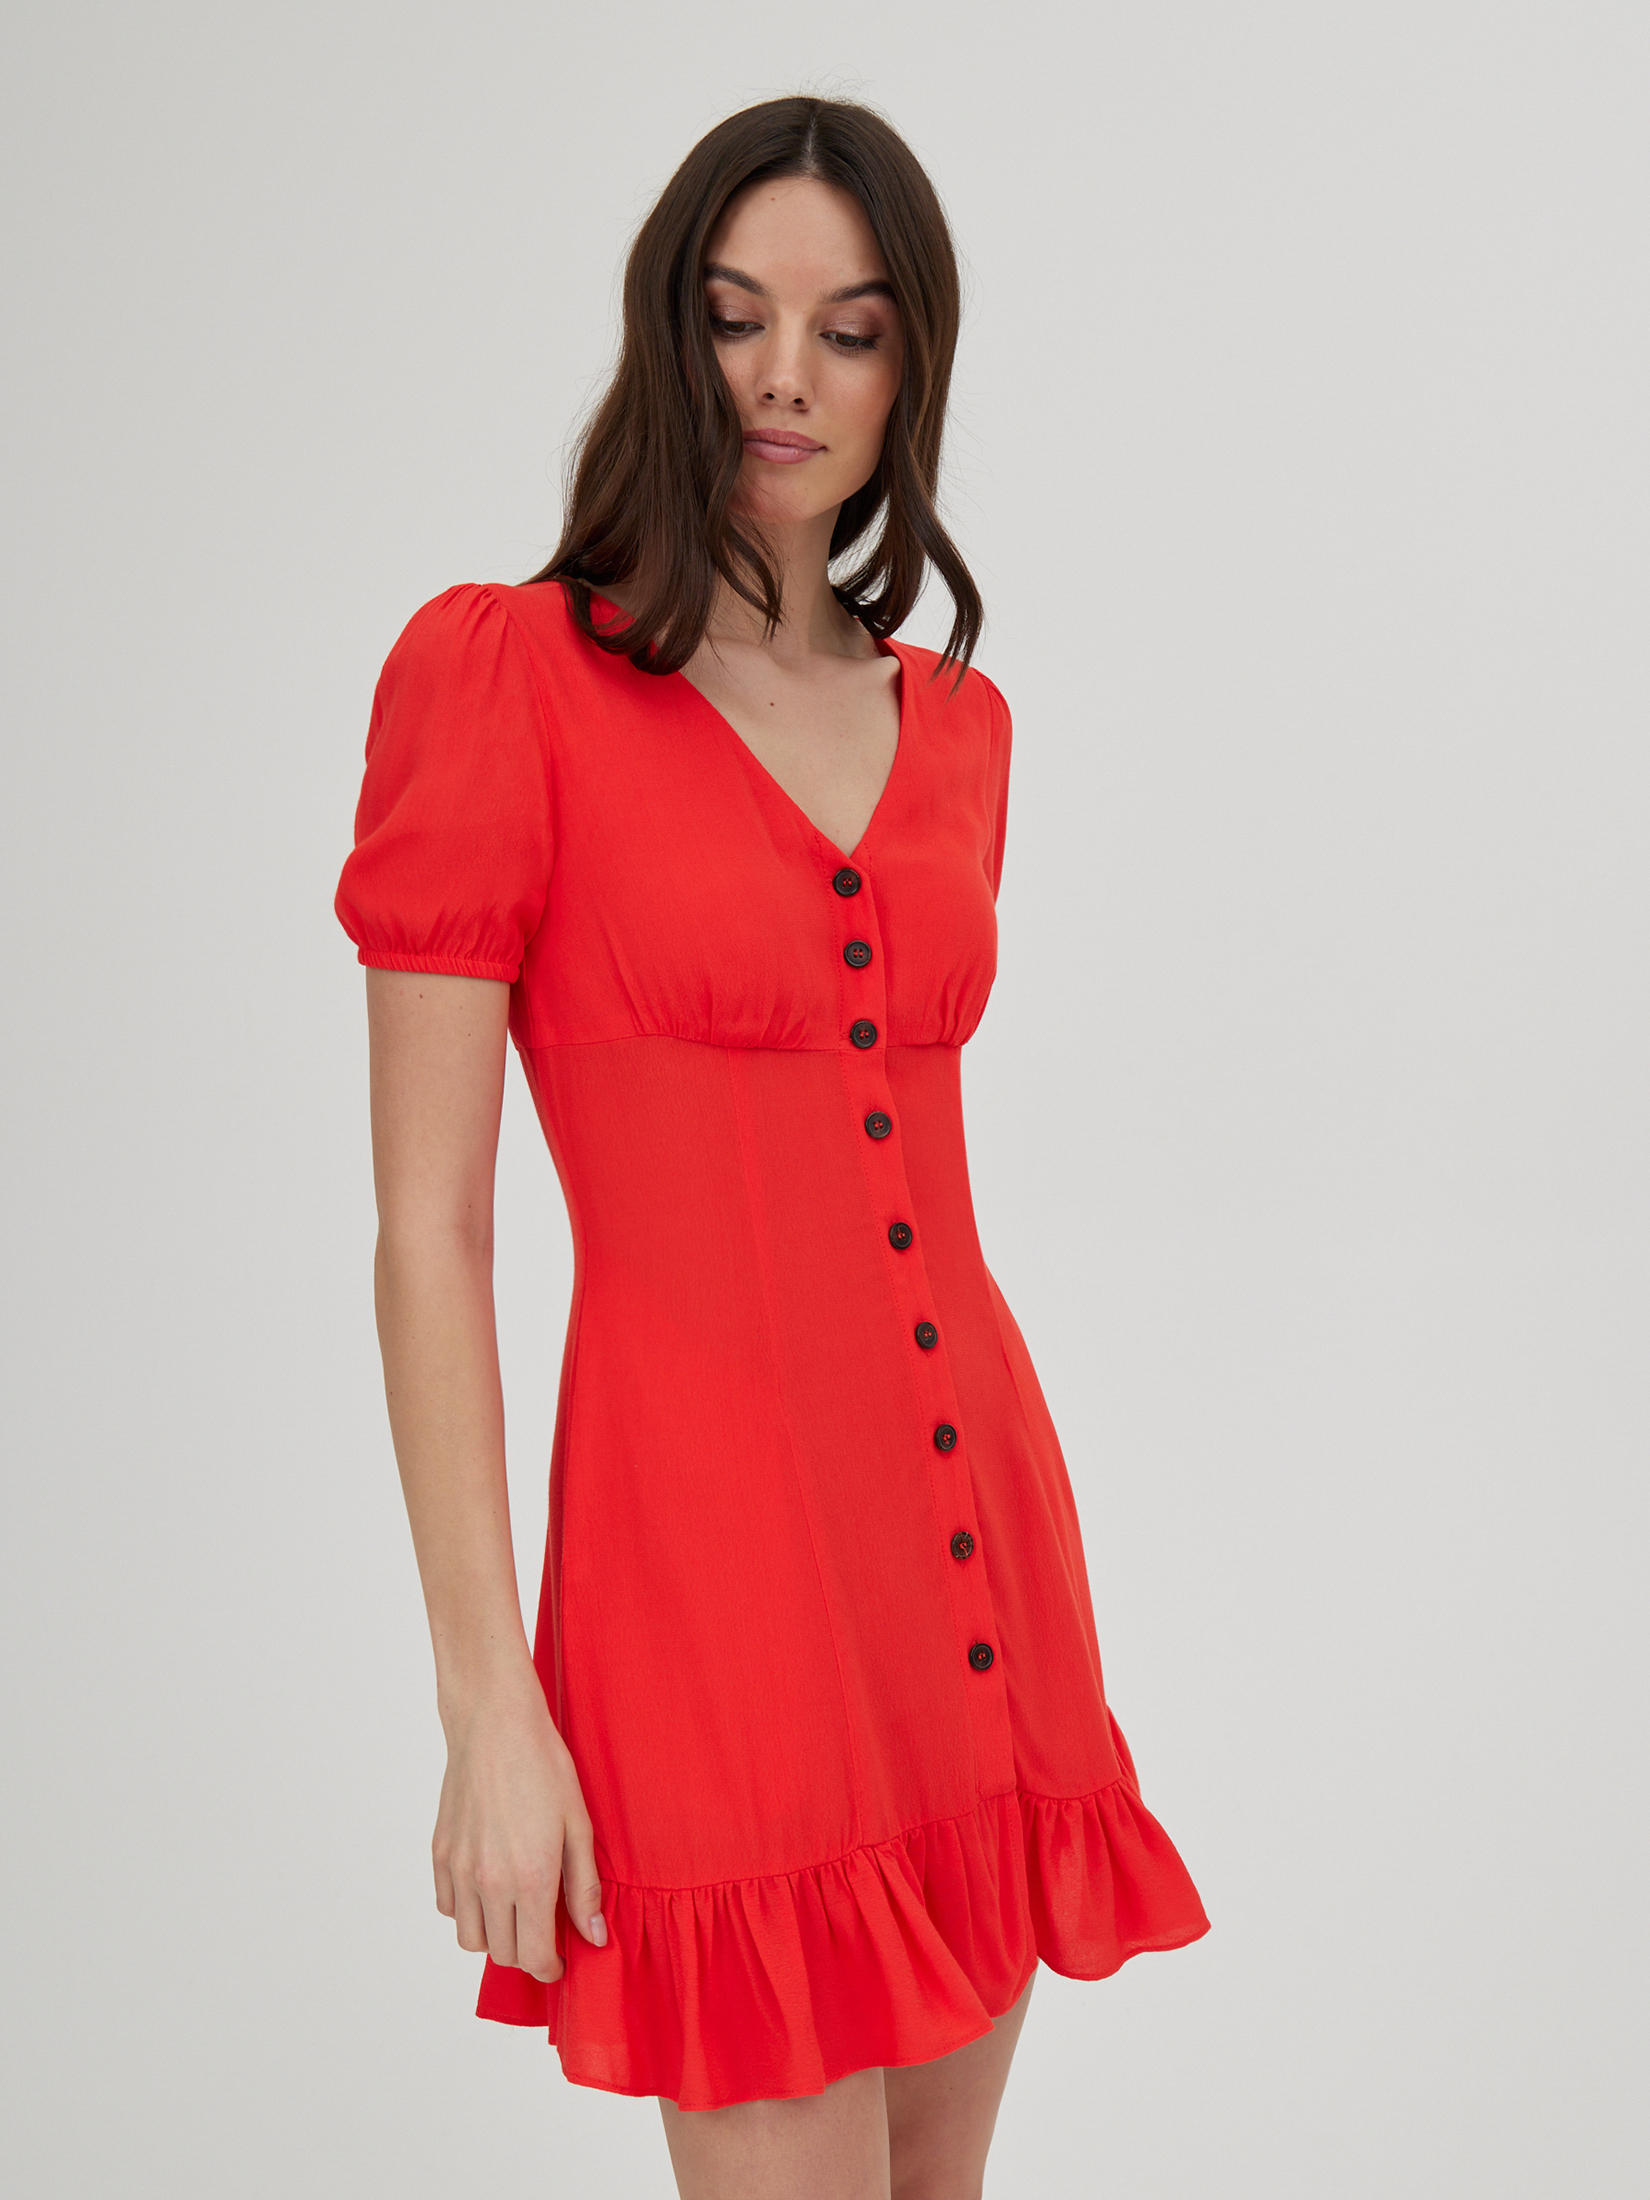 Платье женское красное платье нежное 44 46 размер